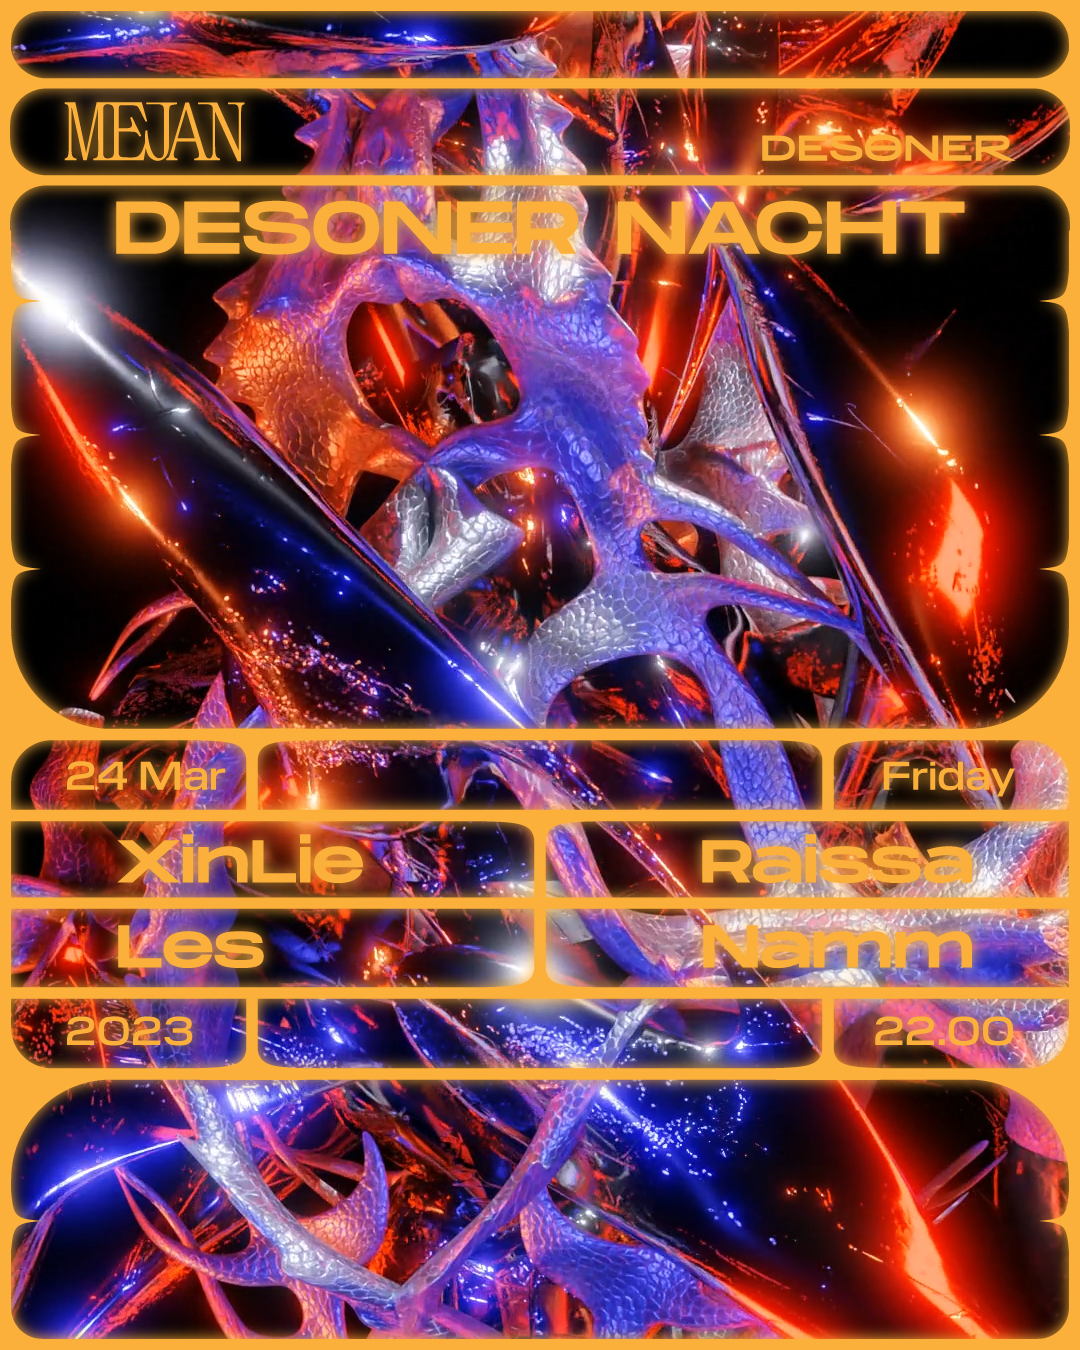 DESØNER Nacht - フライヤー表